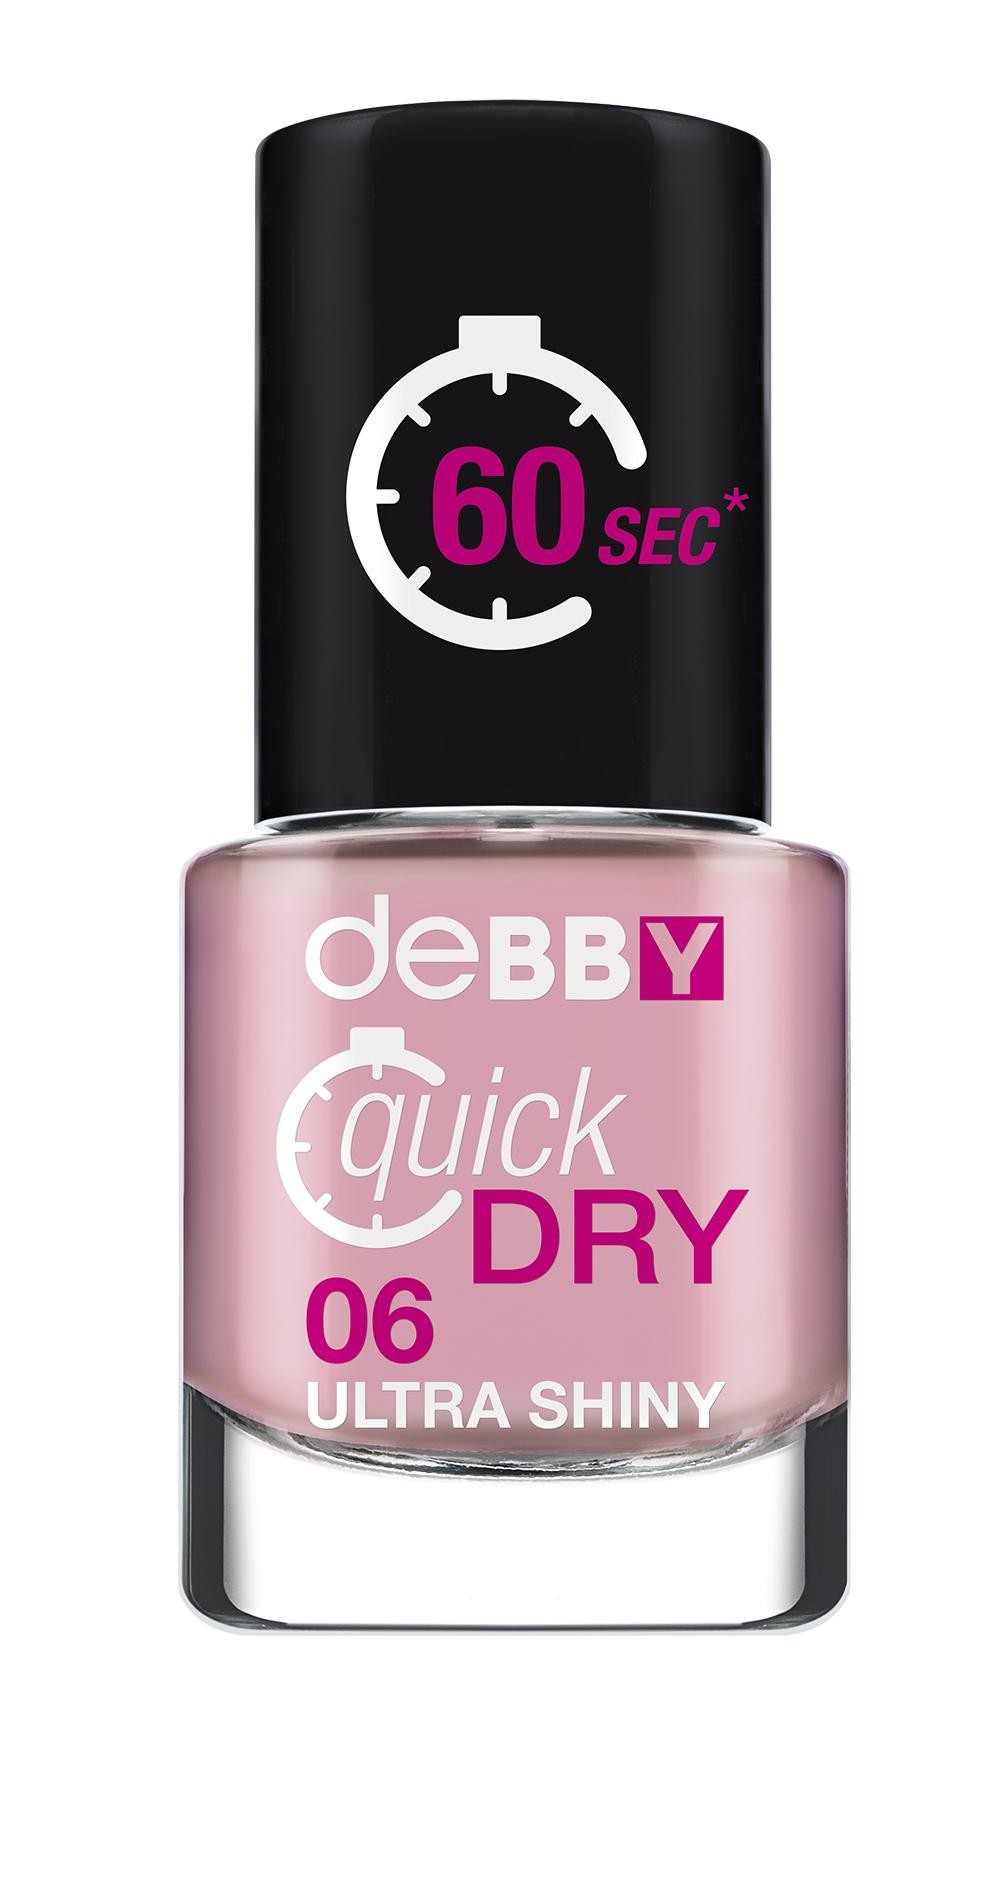 deBBY quickDRY 06 7.5ml